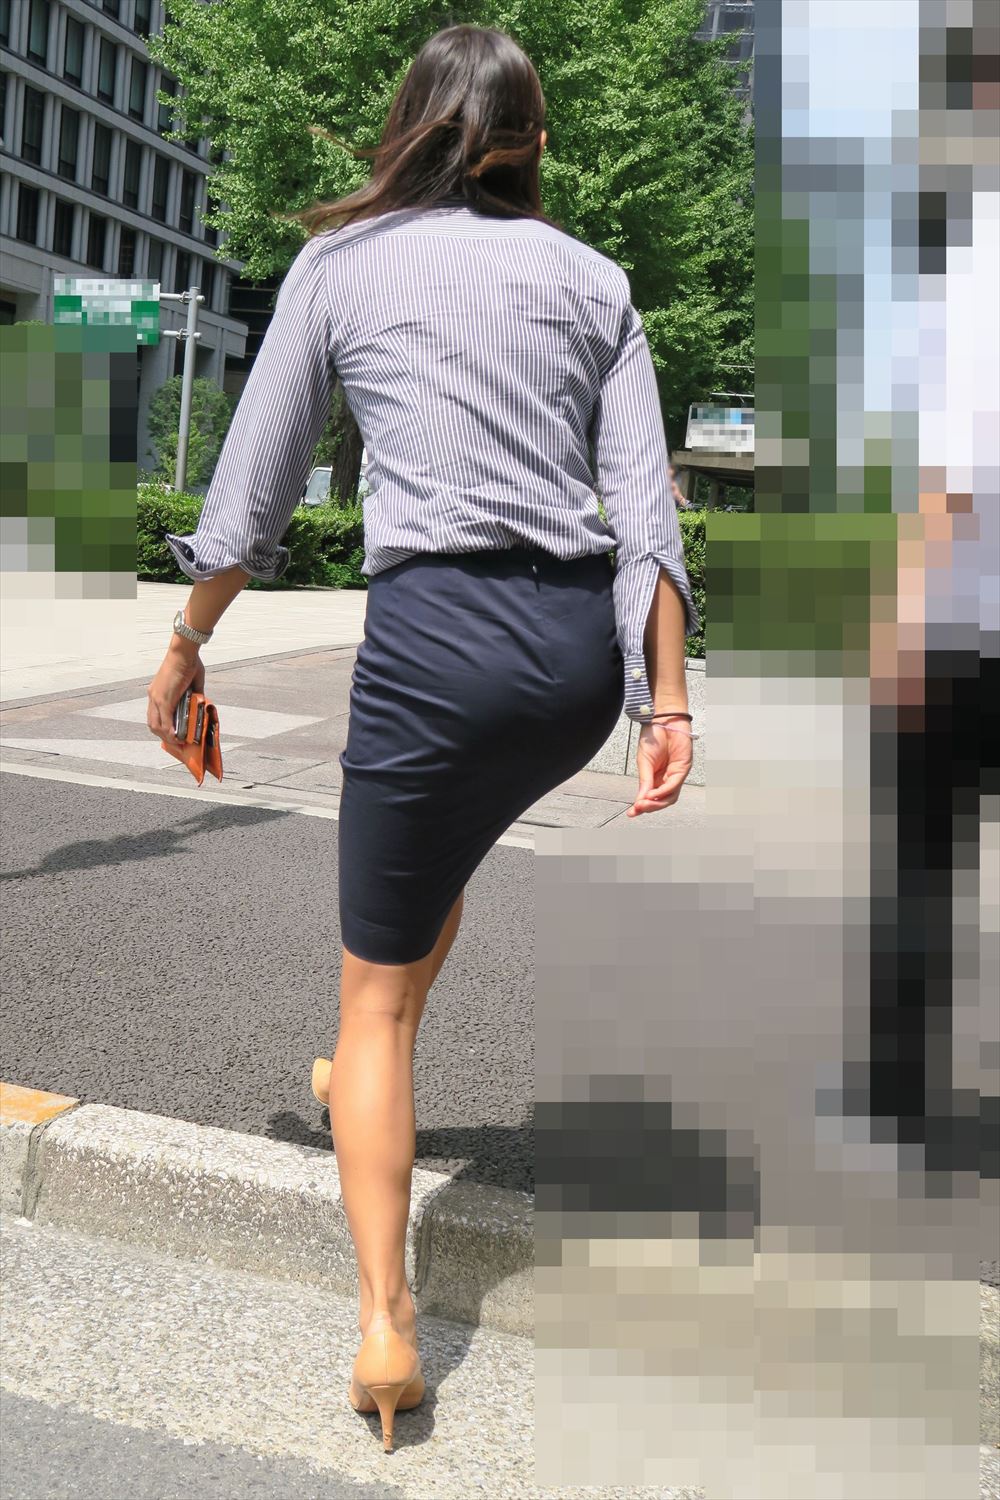 OLさんや就活女子のタイトスカートお尻を街撮りした素人エロ画像-184